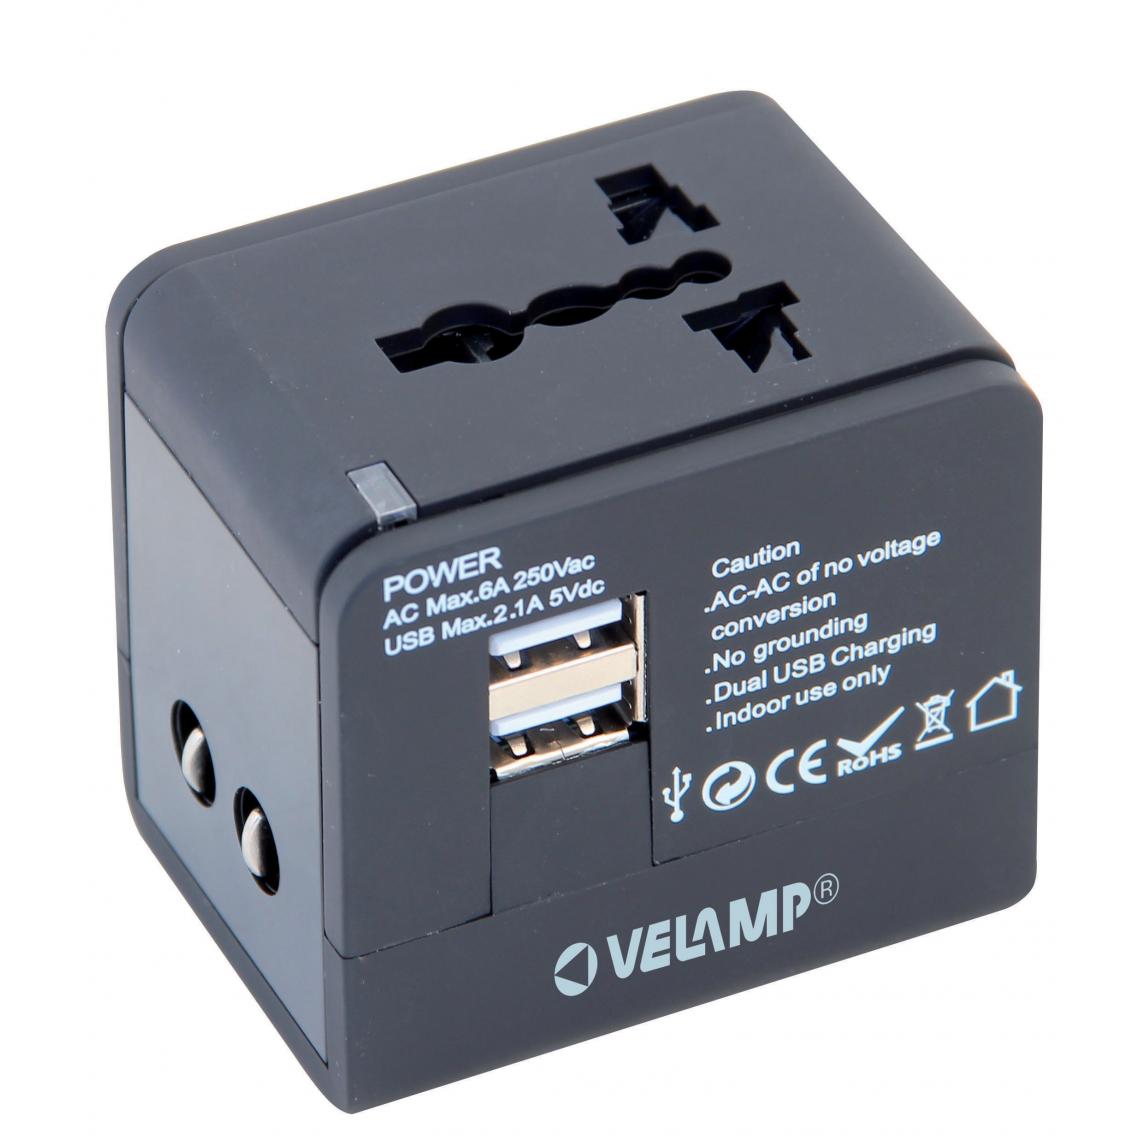 Velamp - Adaptateur de voyage monobloc avec 2 prises USB max. 2.1A - Adaptateurs